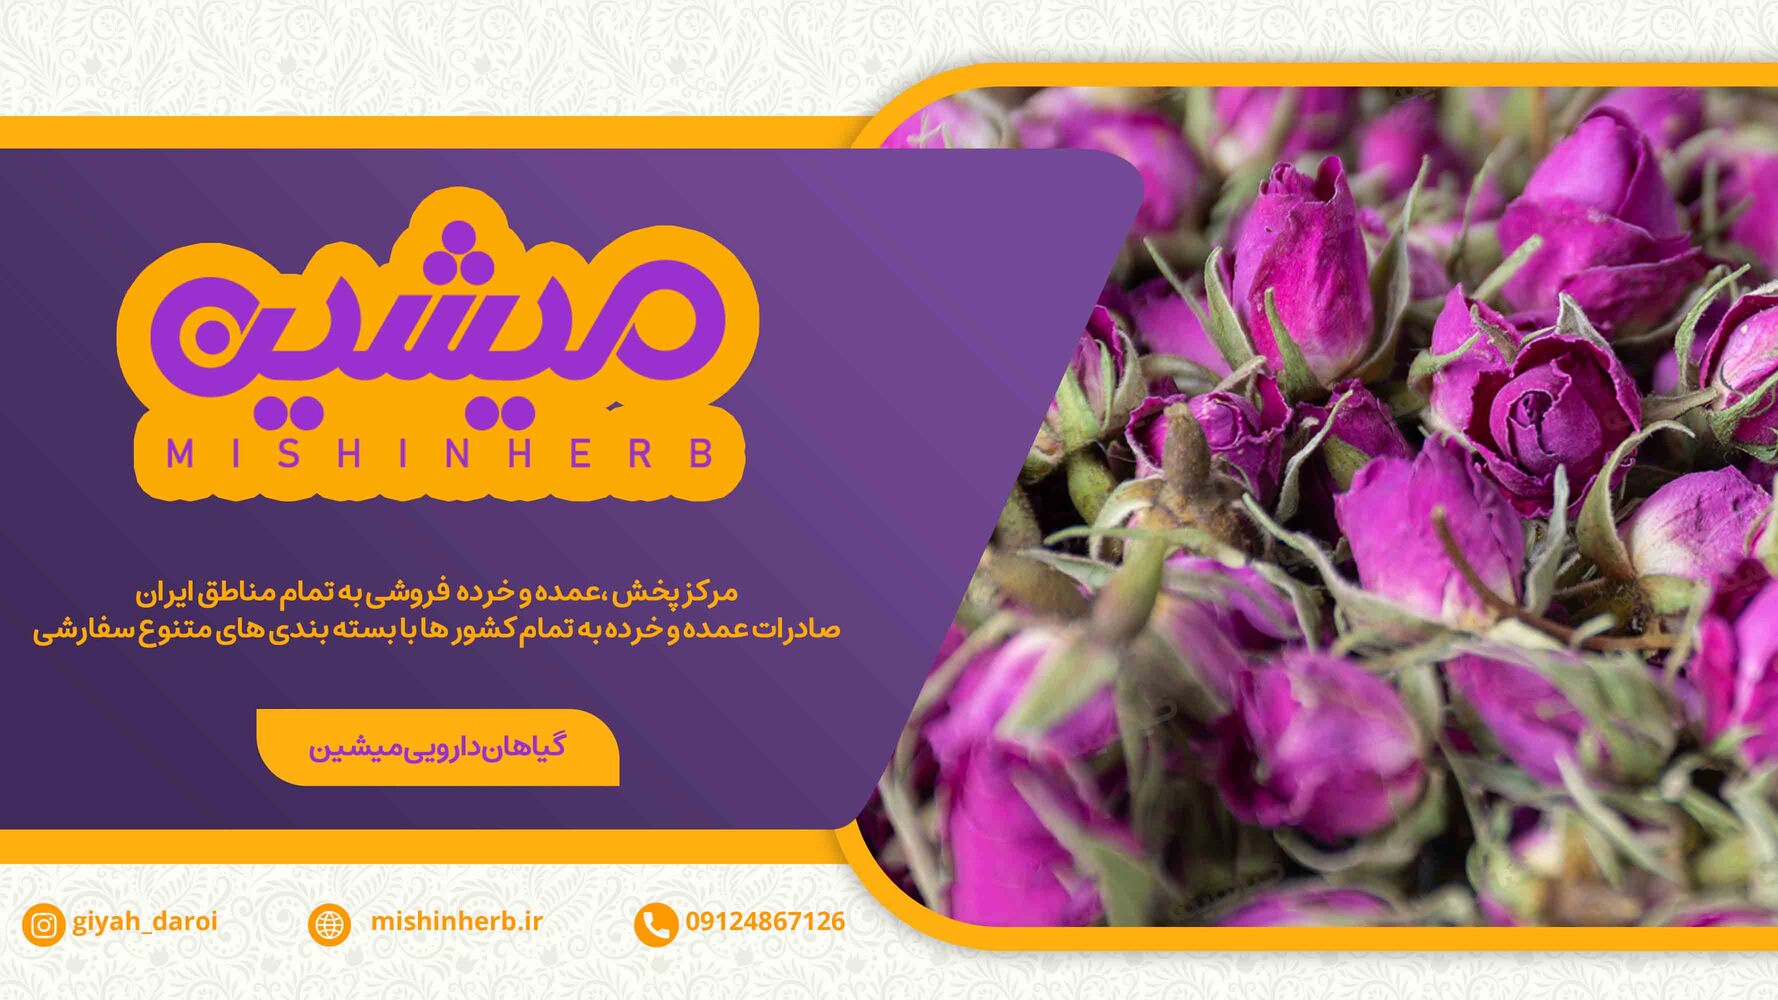 فروشنده عمده گل محمدی